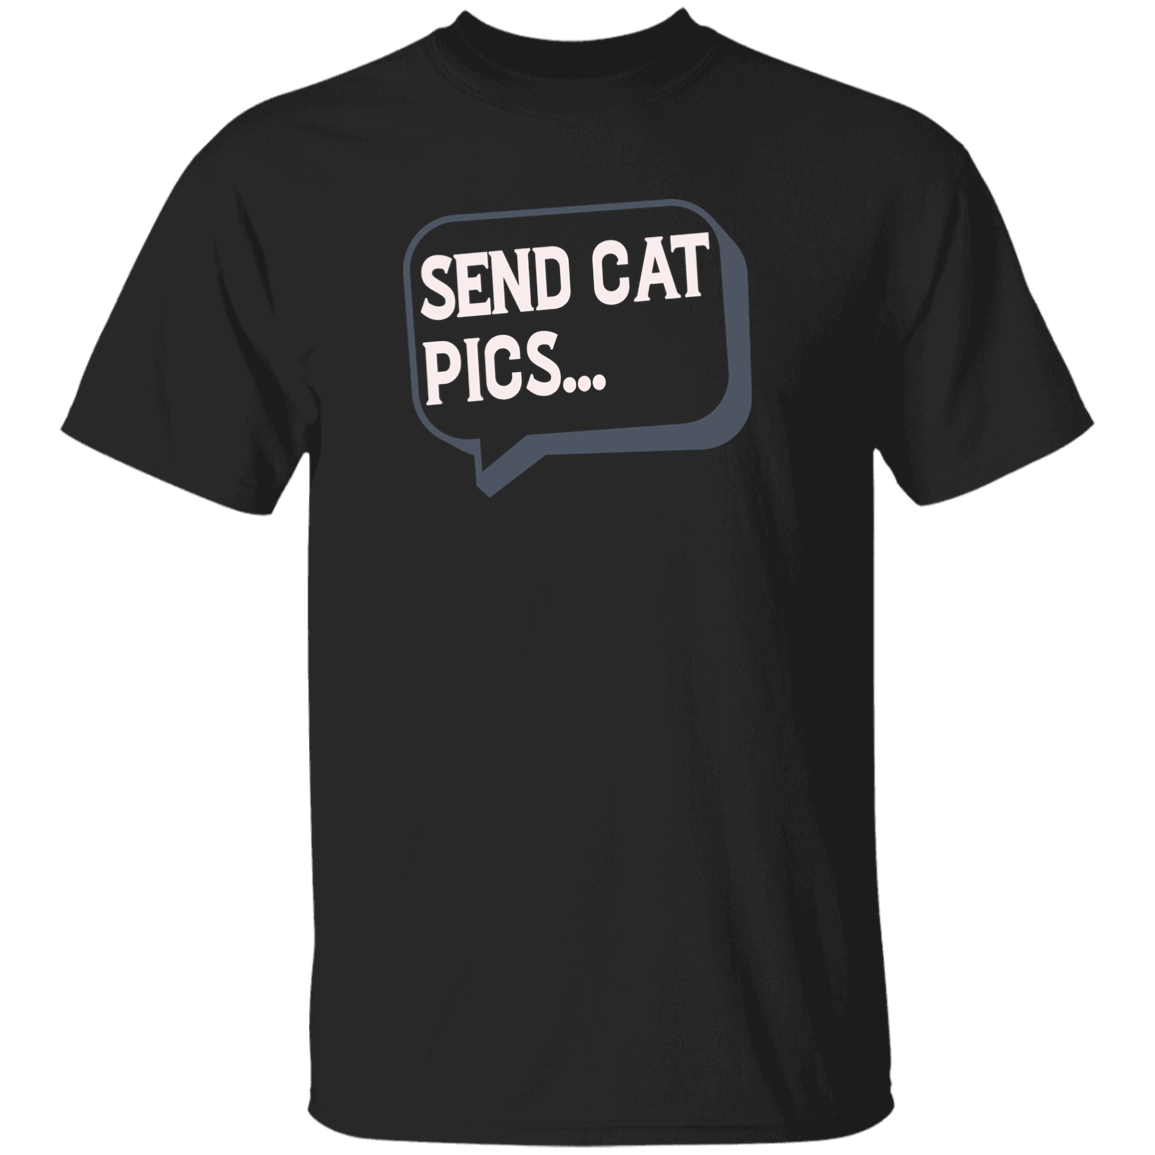 Send Cat Pics - T Shirt.